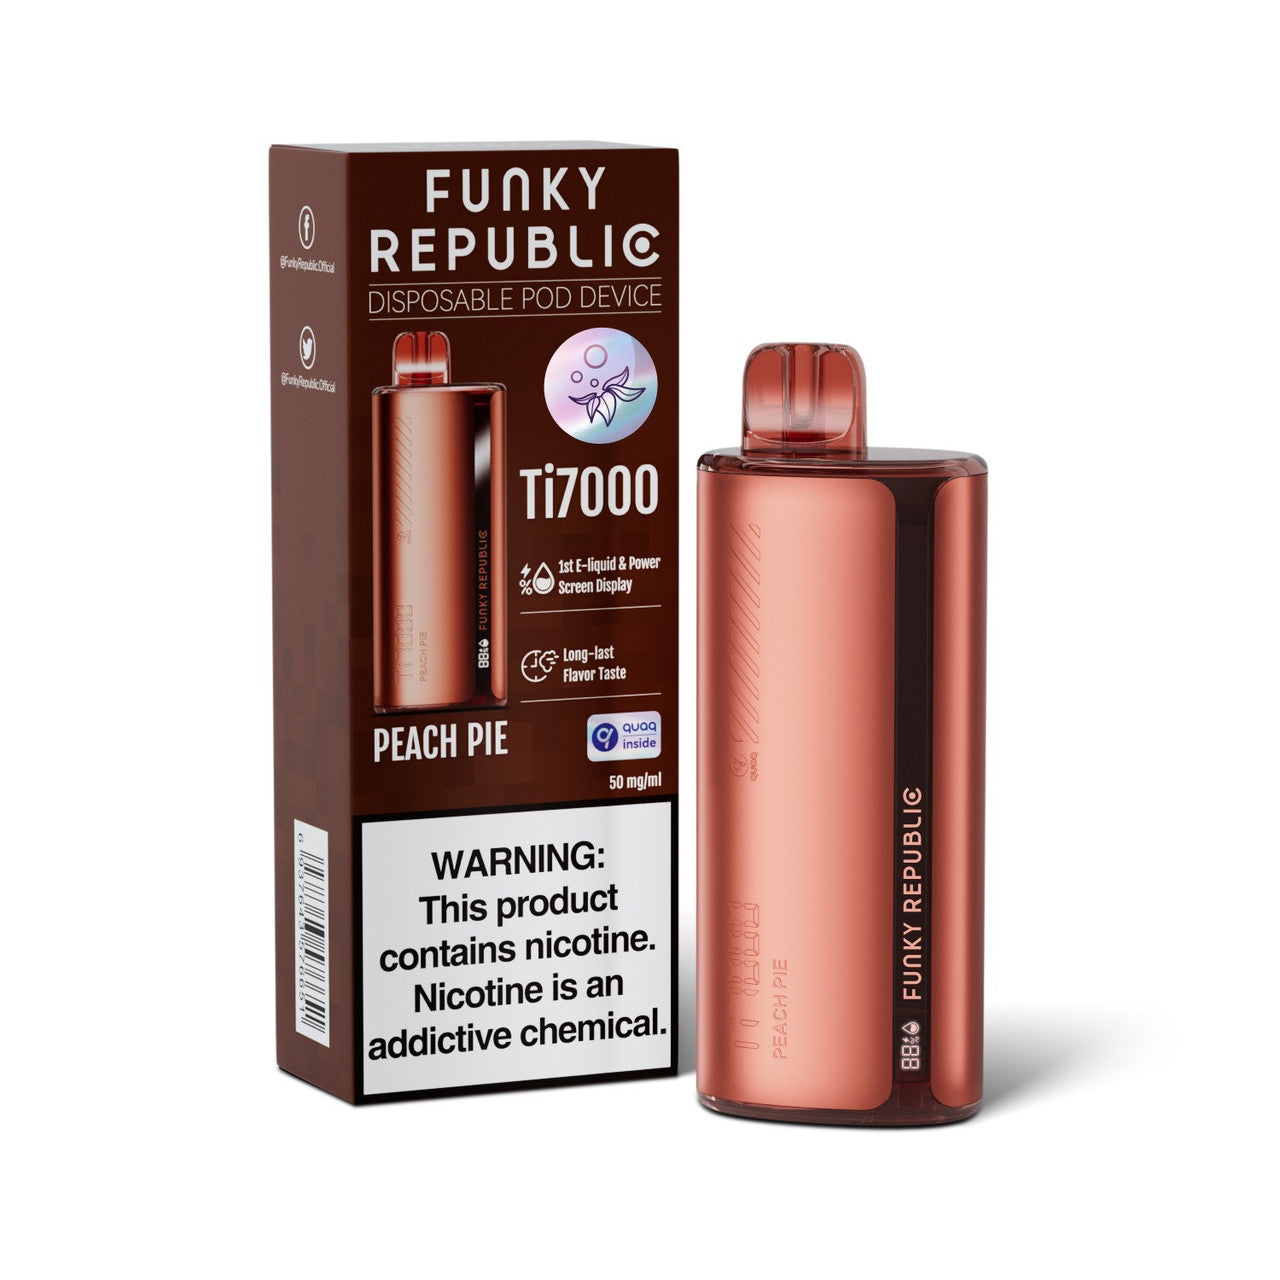 Funky Republic TI7000 EB Disposable Vape Wholesale - 1 Box / 5pcs